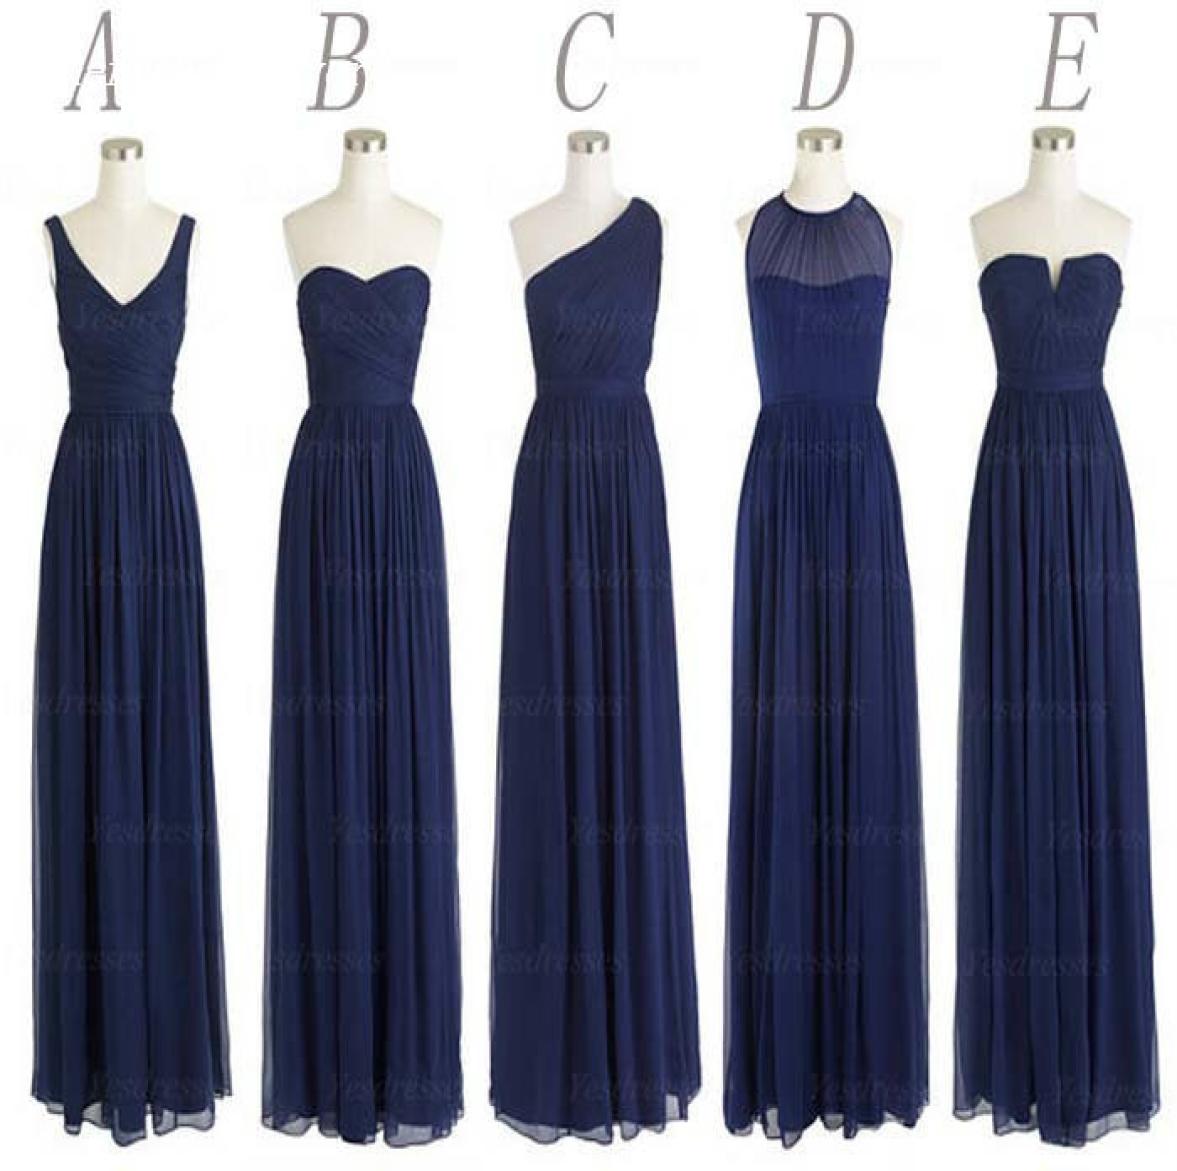 Stile: Chiffon, bodenlang, lang, dunkelmarineblau, Abendkleid, Damen, Hochzeitskleid, Ganzes 20195885251